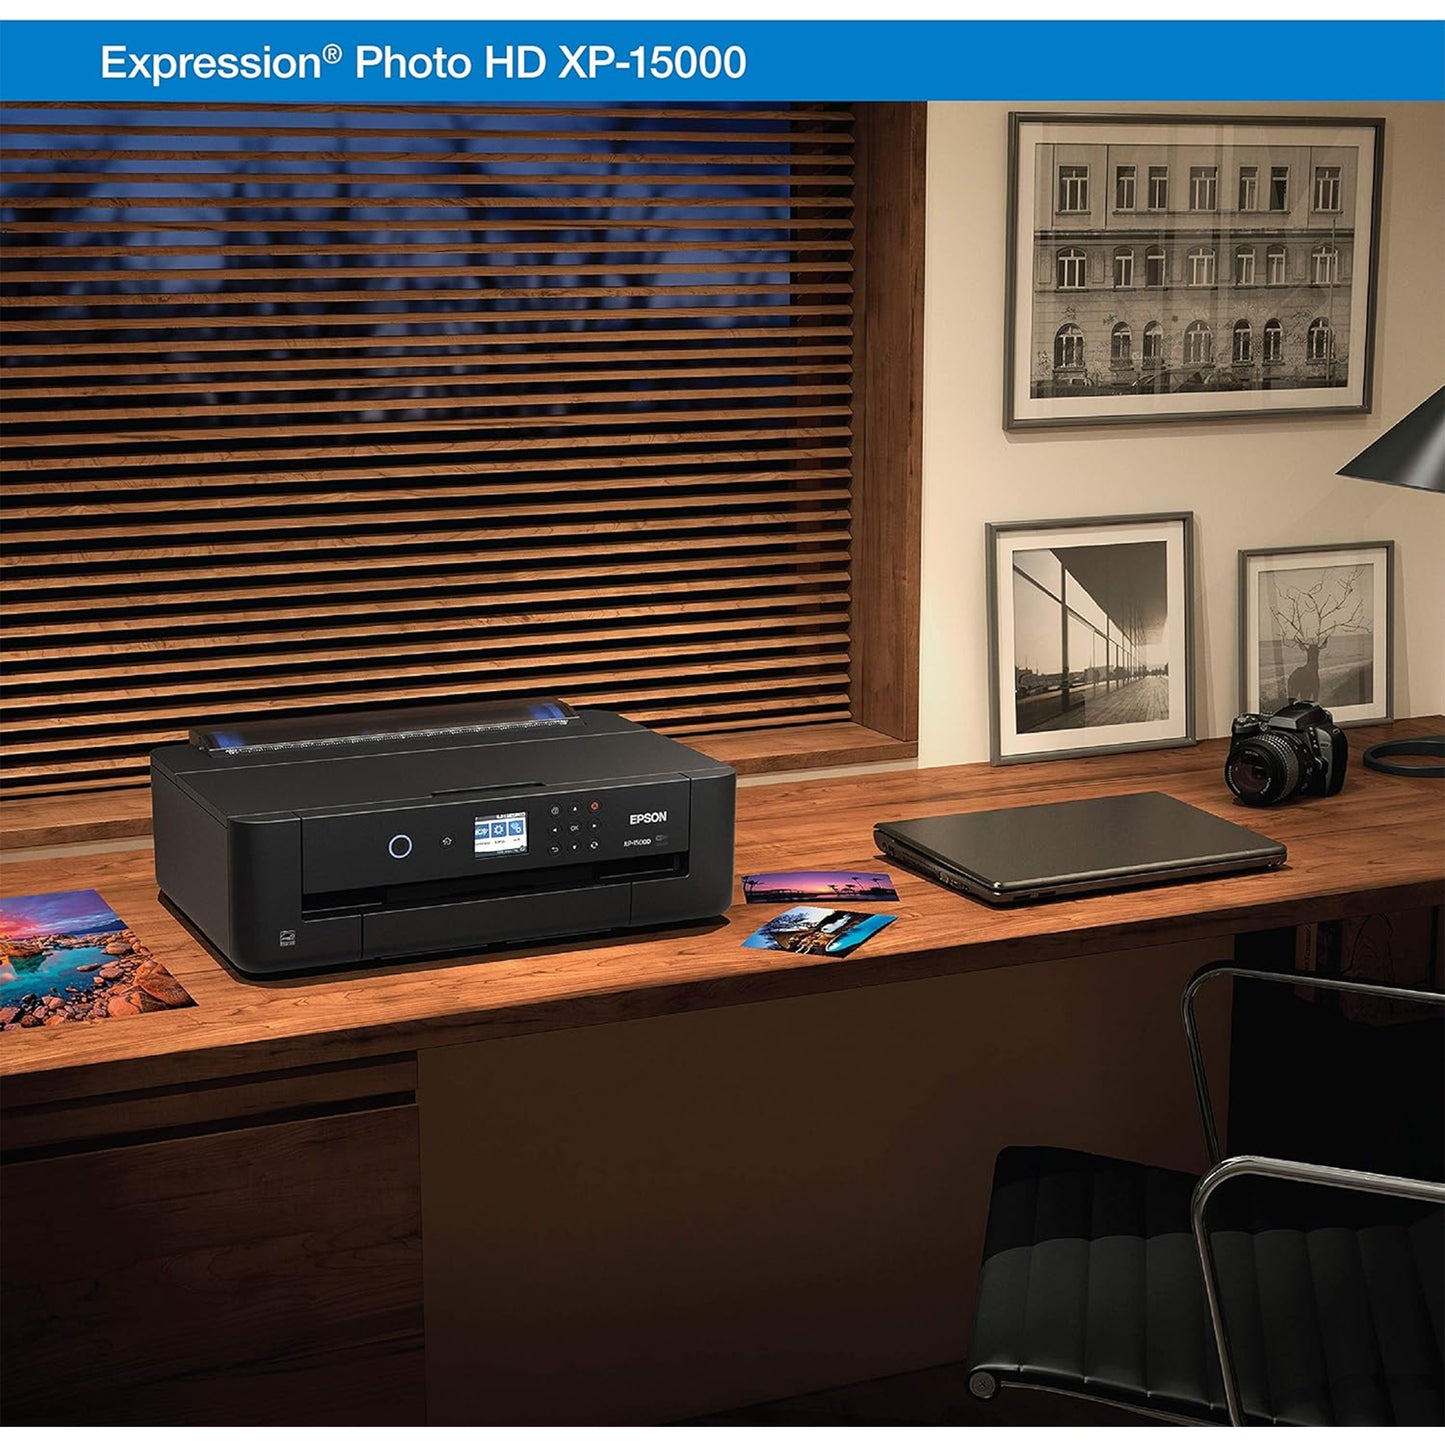 طابعة Epson Expression Photo HD XP-15000 اللاسلكية الملونة ذات التنسيق العريض، جاهزة للتجديد من Amazon Dash، أسود، كبير 